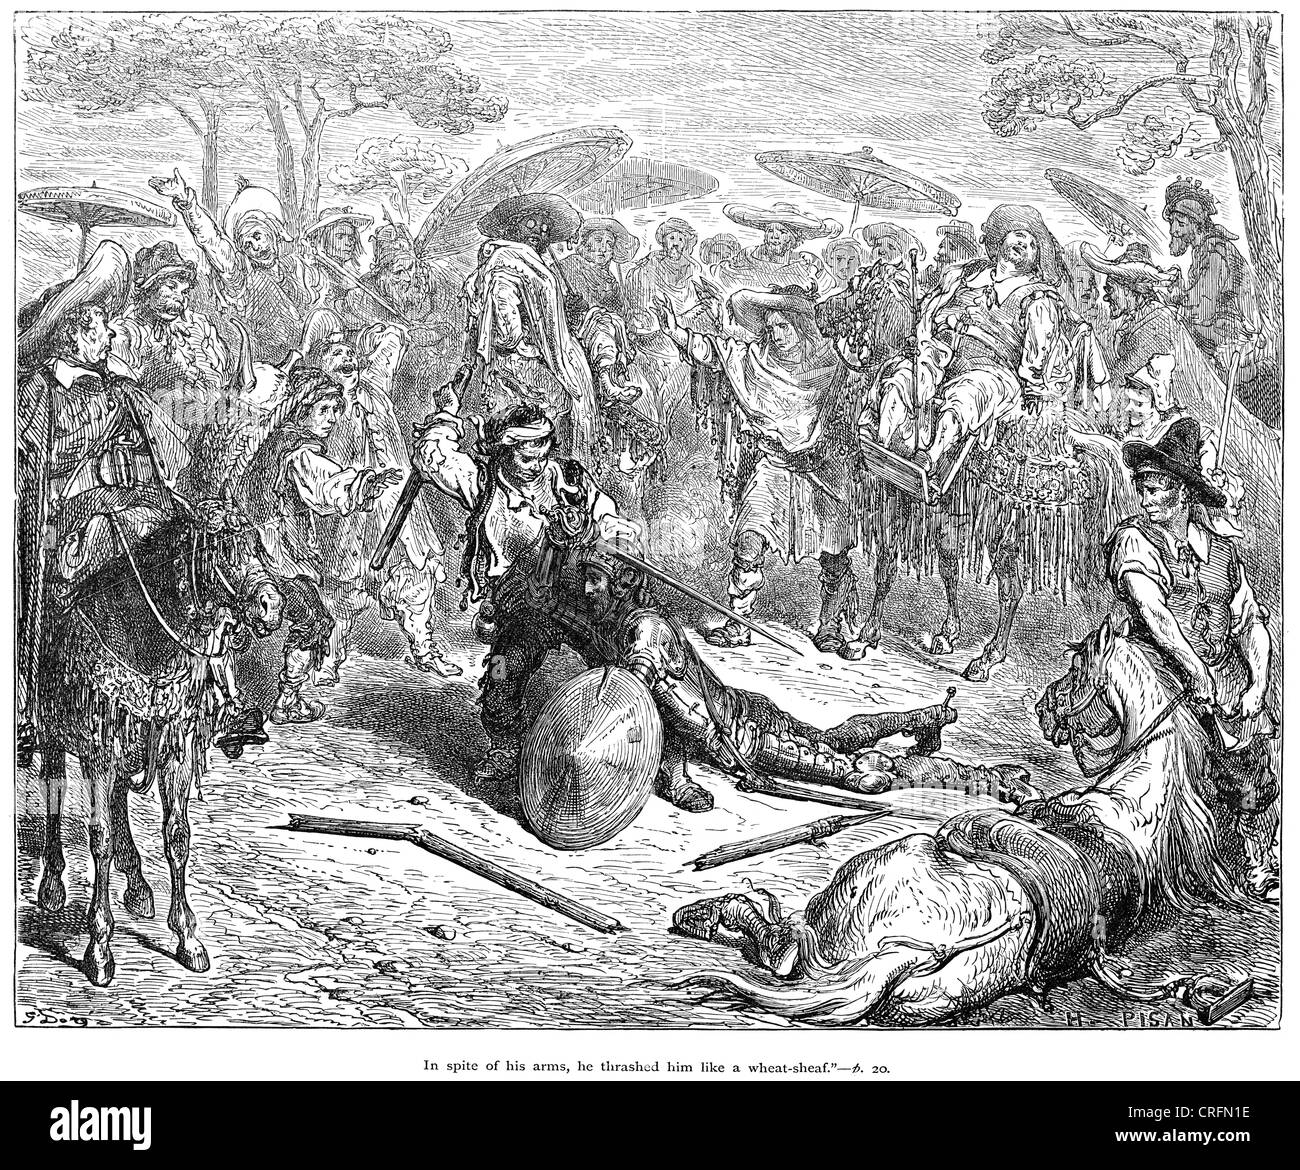 Don Quijote verprügelt er ihn wie eine Weizen-Garbe. Illustration von Gustave Dore von Don Quijote. Stockfoto